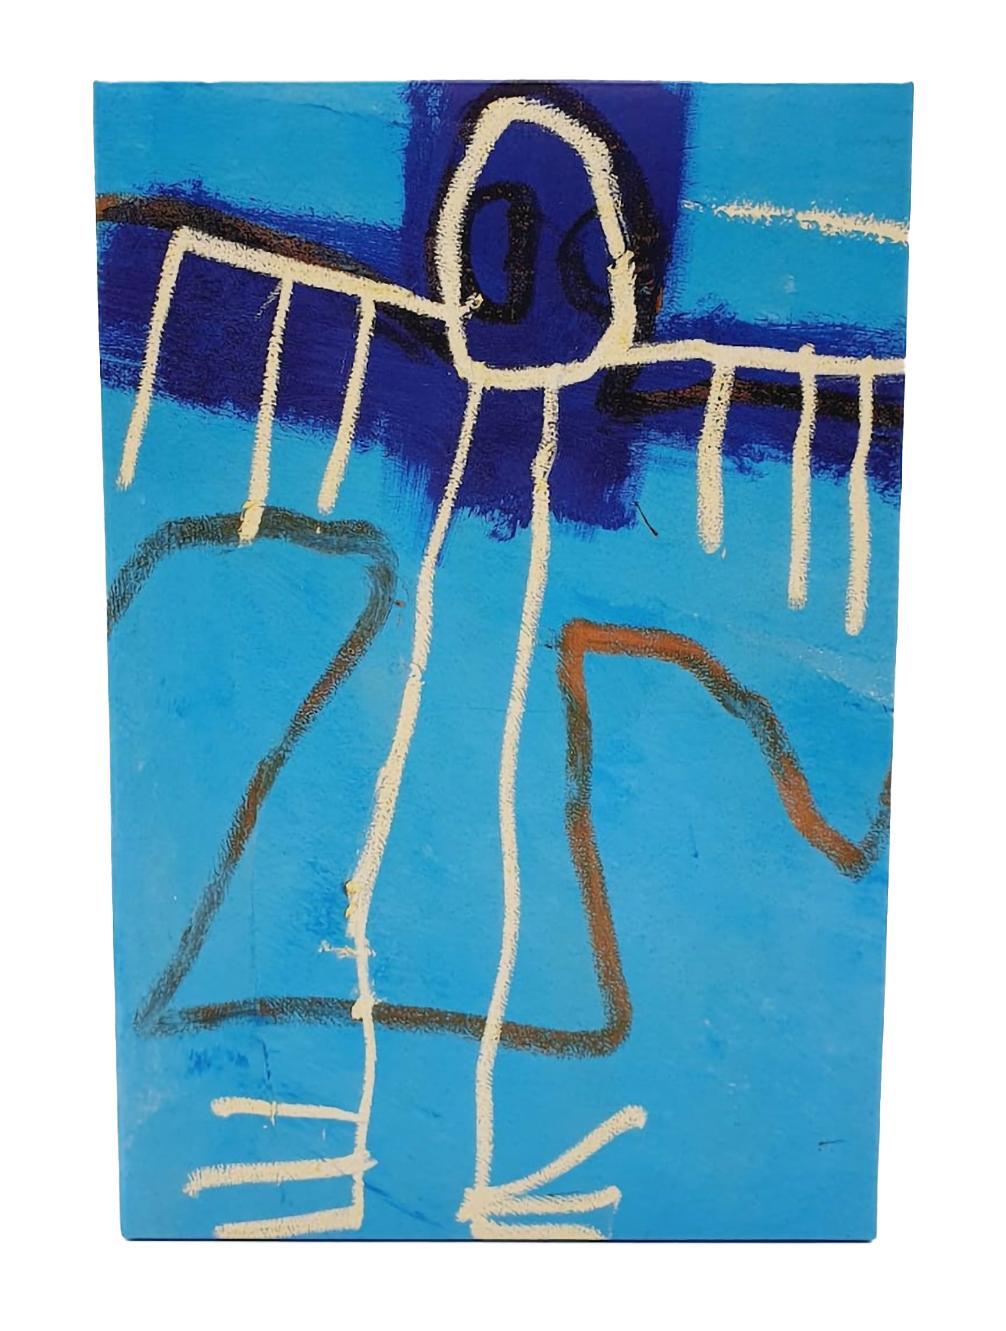 Jean-Michel Basquiat Bearbrick Vinyl Figuren: Satz von zwei (400% & 100%):
Ein einzigartiges, zeitloses Basquiat-Sammlerstück in limitierter Auflage, geschützt und lizenziert durch den Nachlass von Jean-Michel Basquiat. Das Sammlerstück zeigt